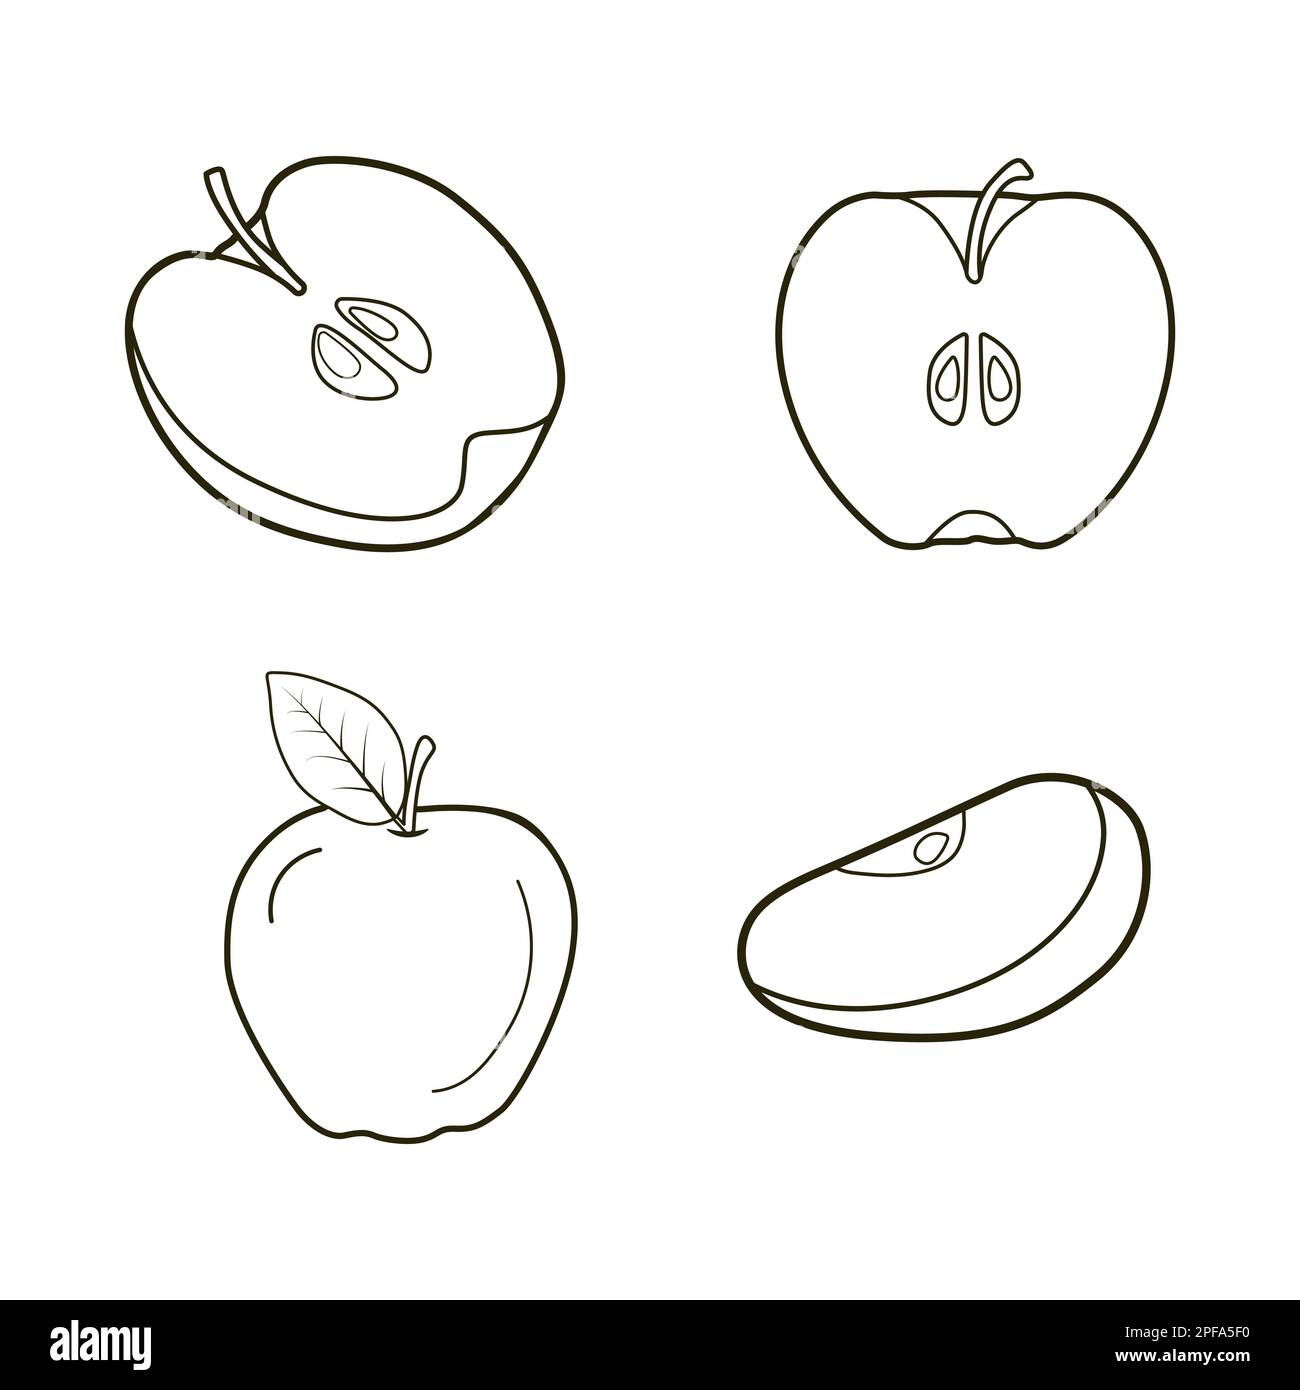 Apple outline, Apple line art icon, Apple logo Stock Vector